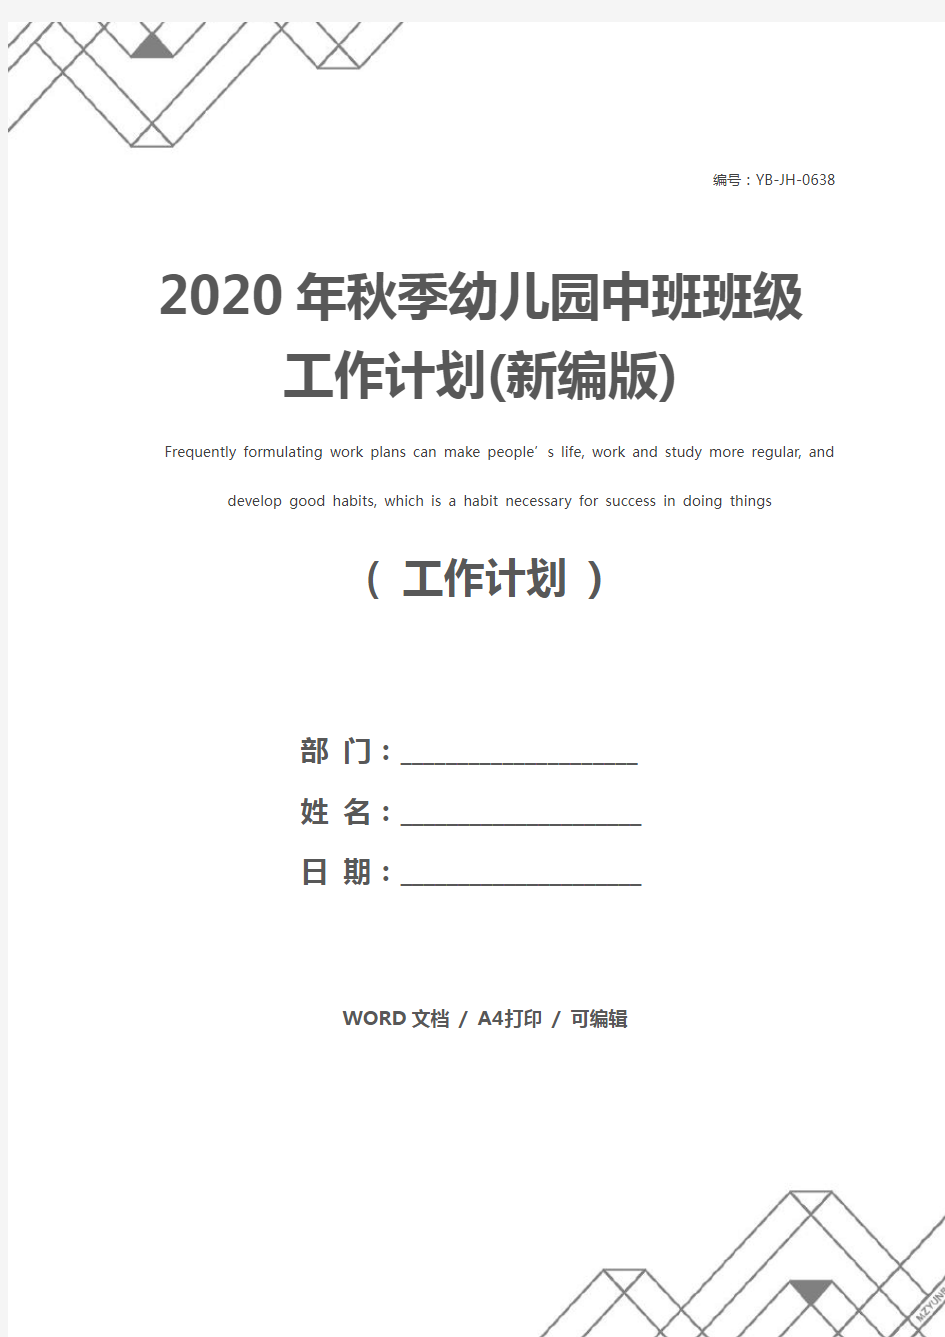 2020年秋季幼儿园中班班级工作计划(新编版)